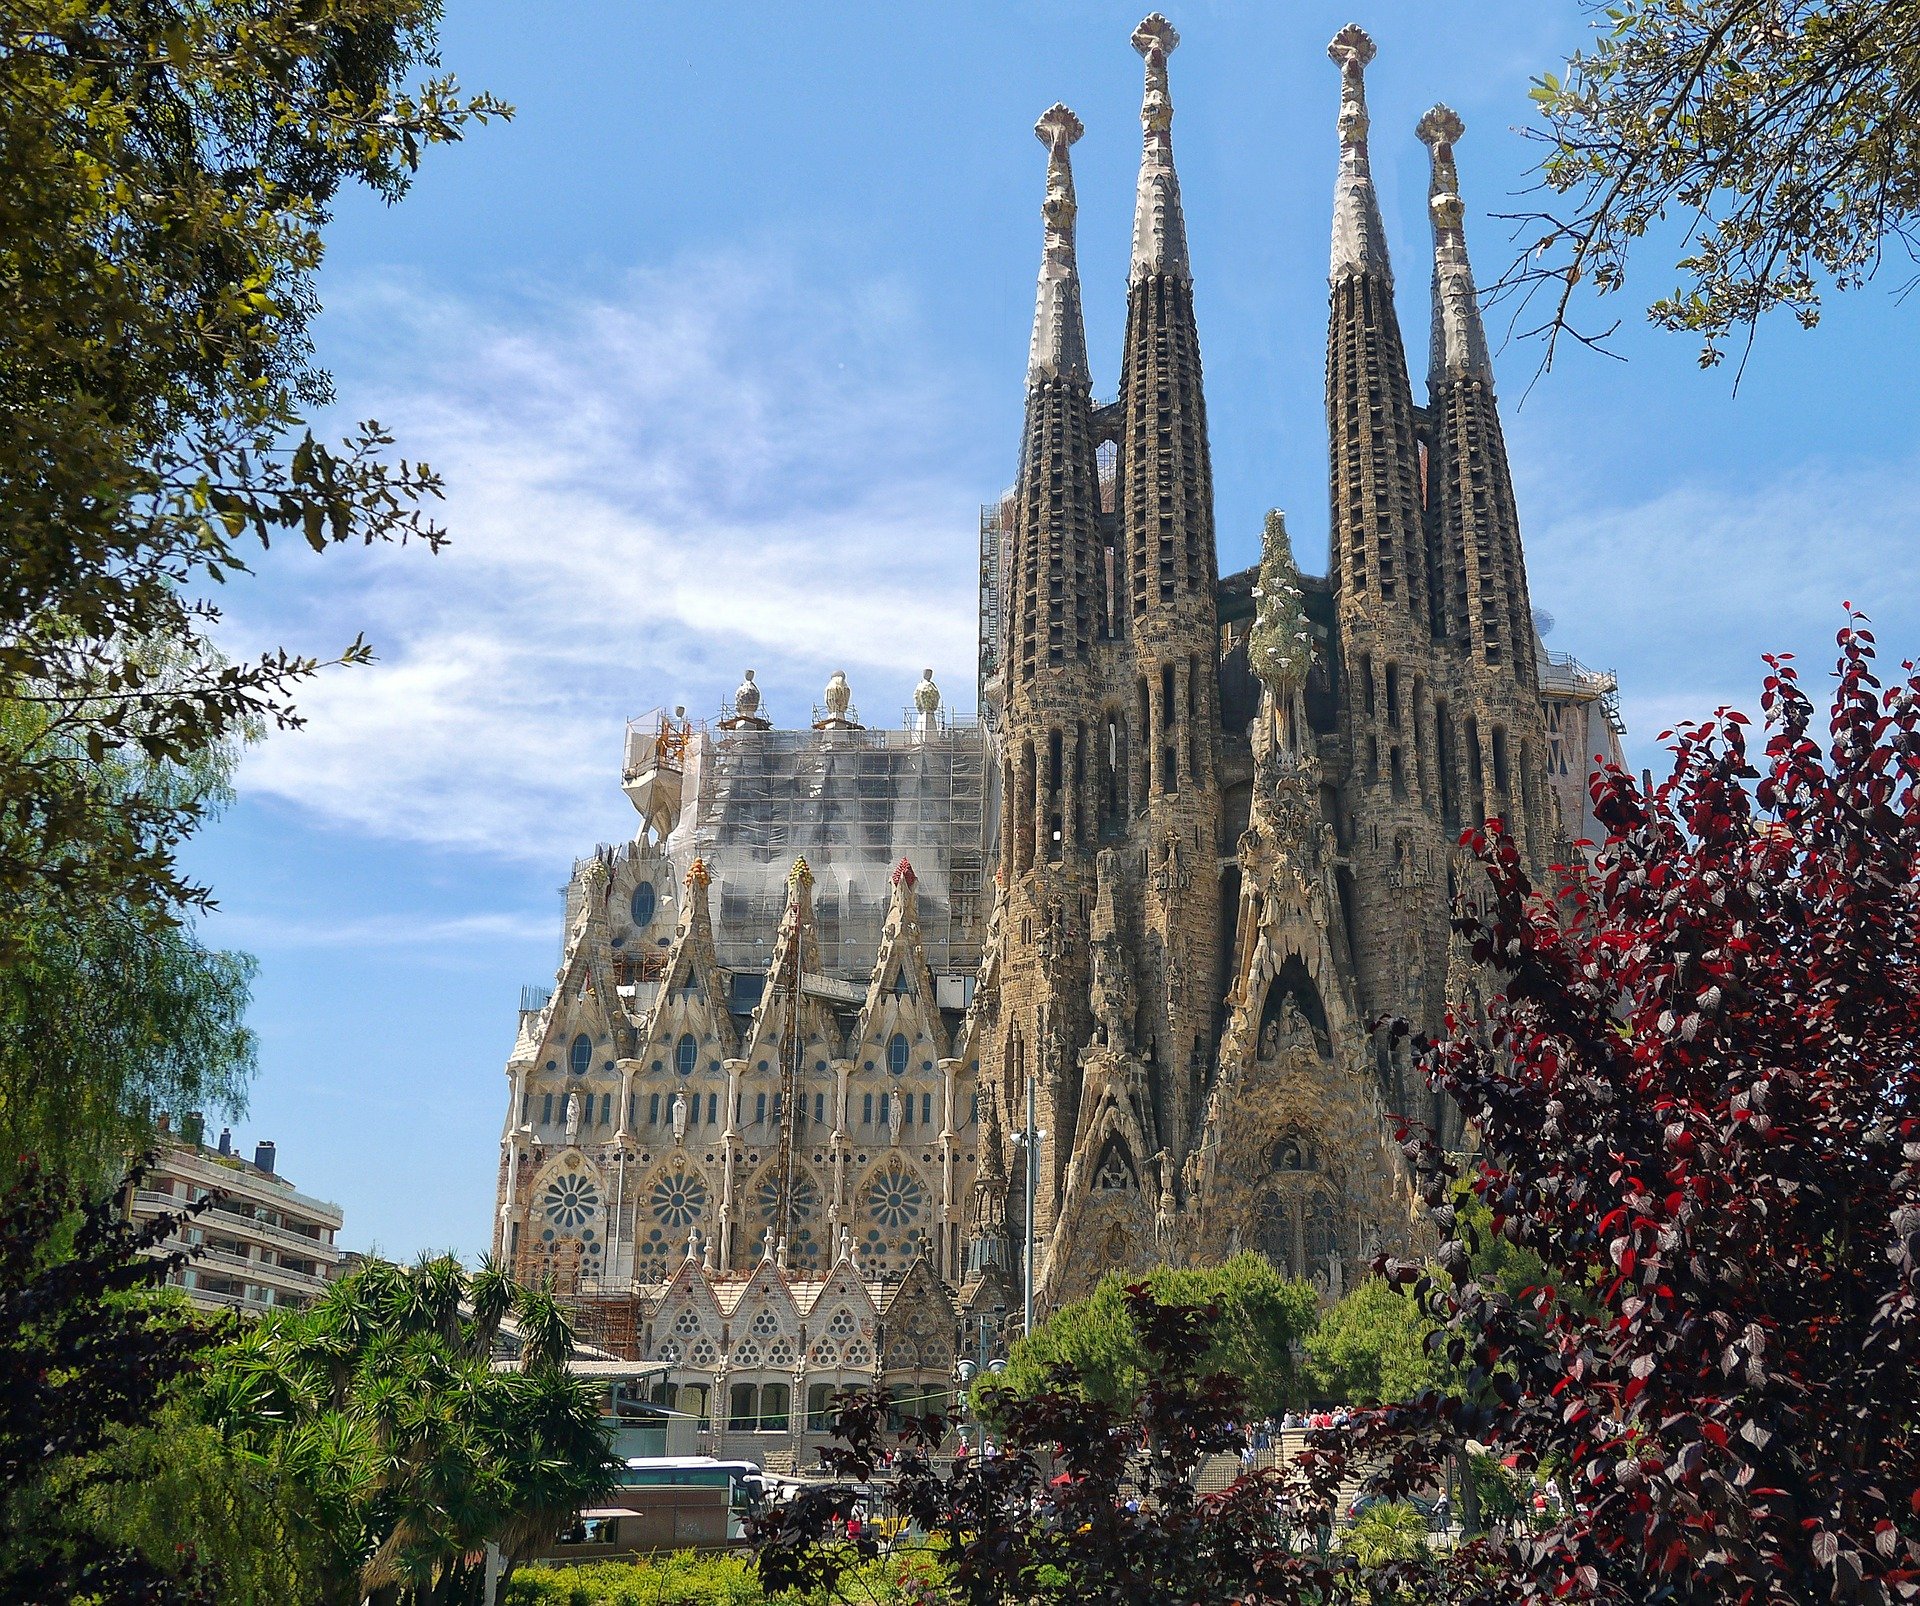 Jegy a Sagrada Familiaba – Találja meg a legolcsóbb árat